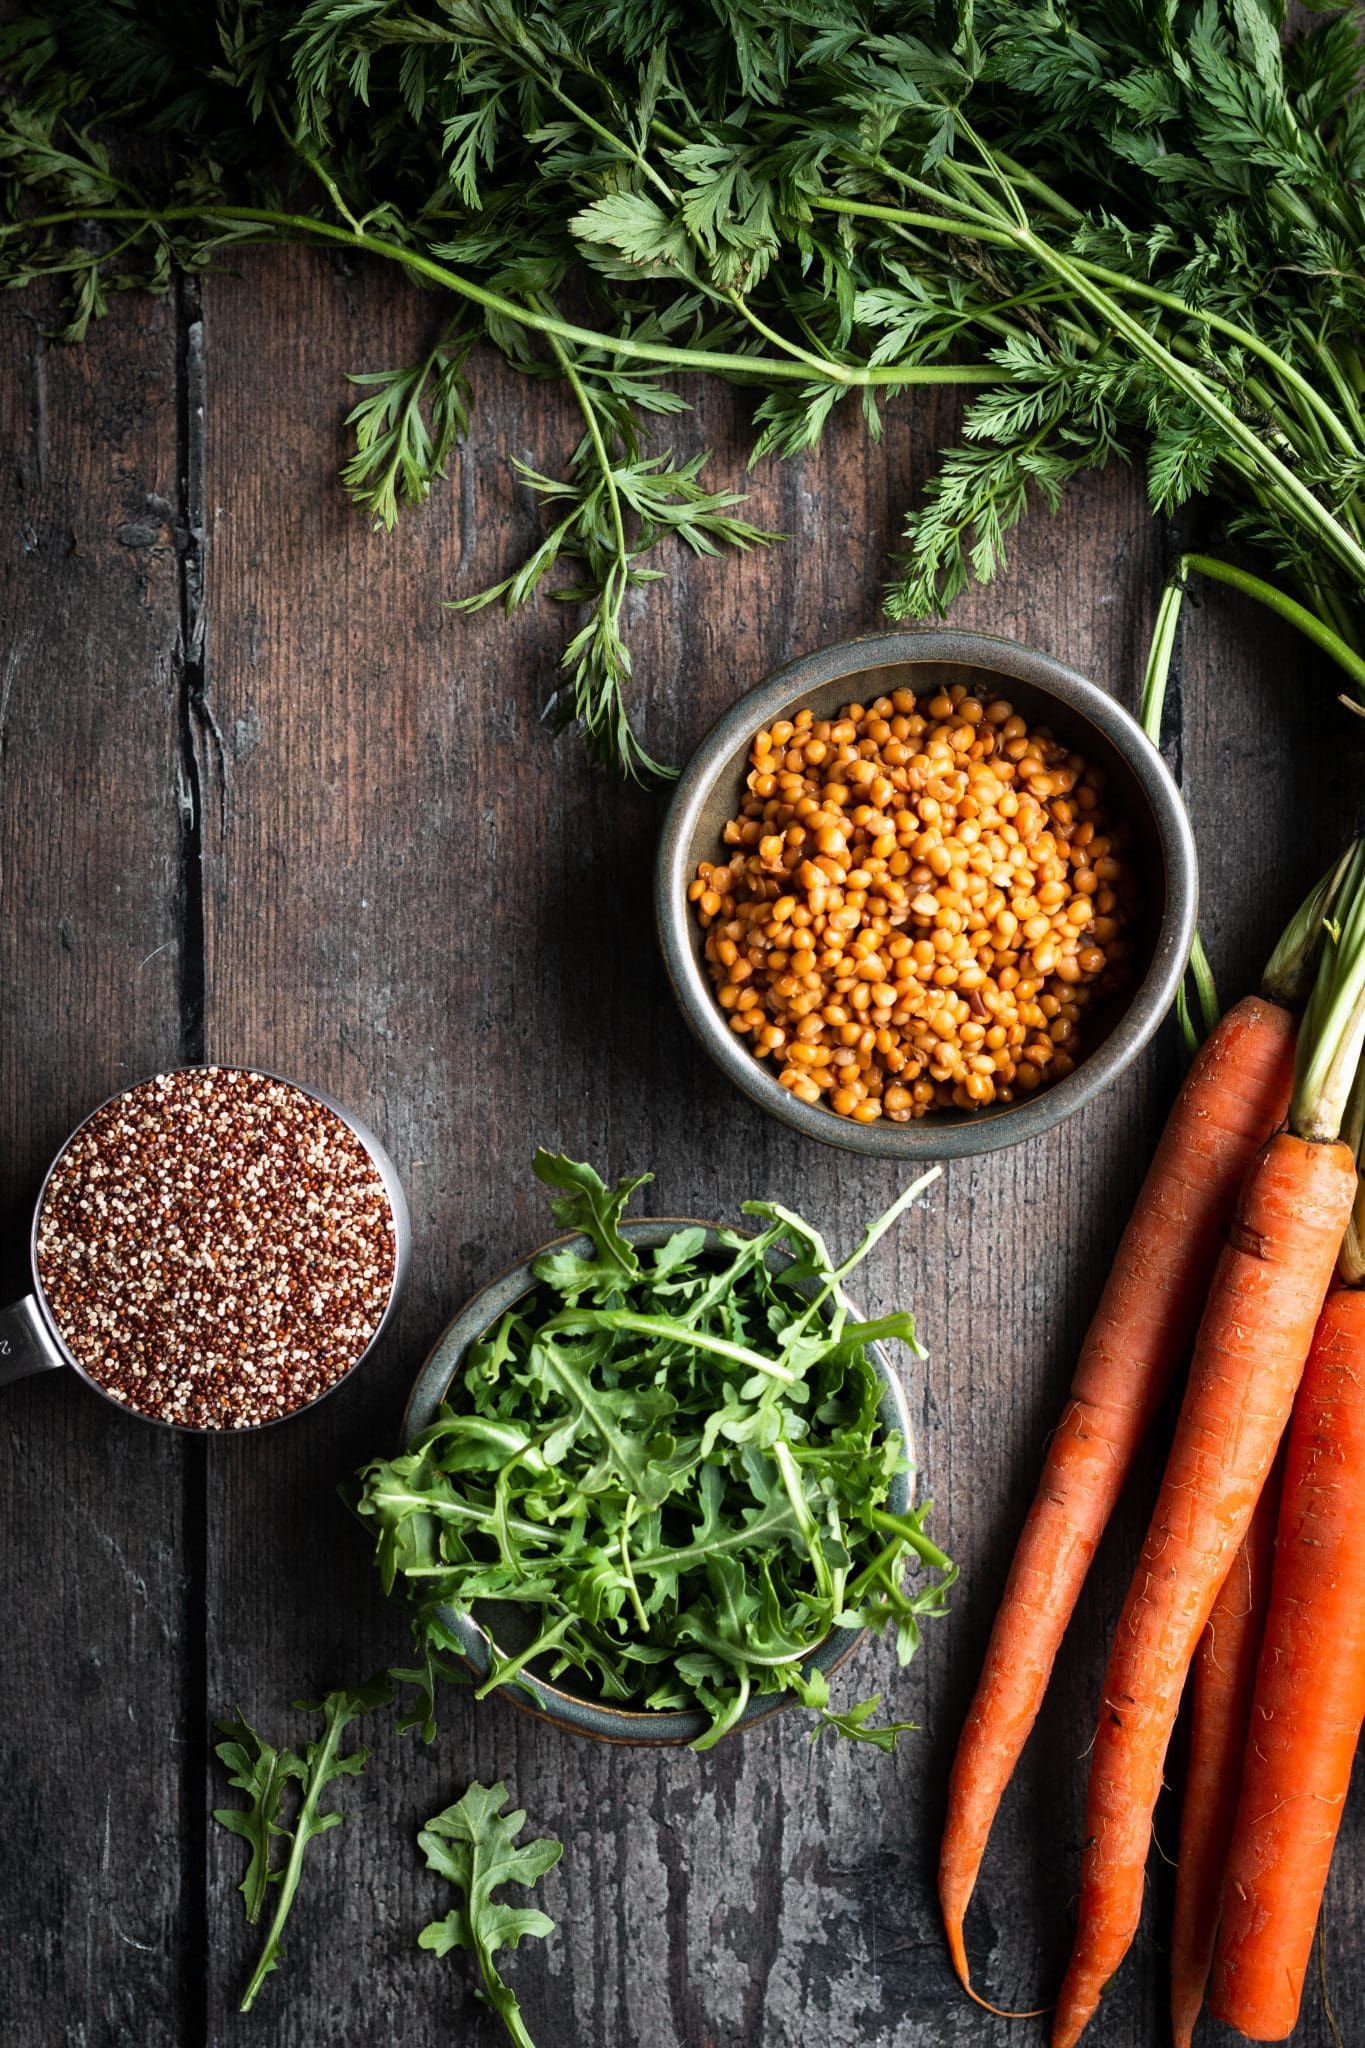 carrots, lentils, arugula and quinoa